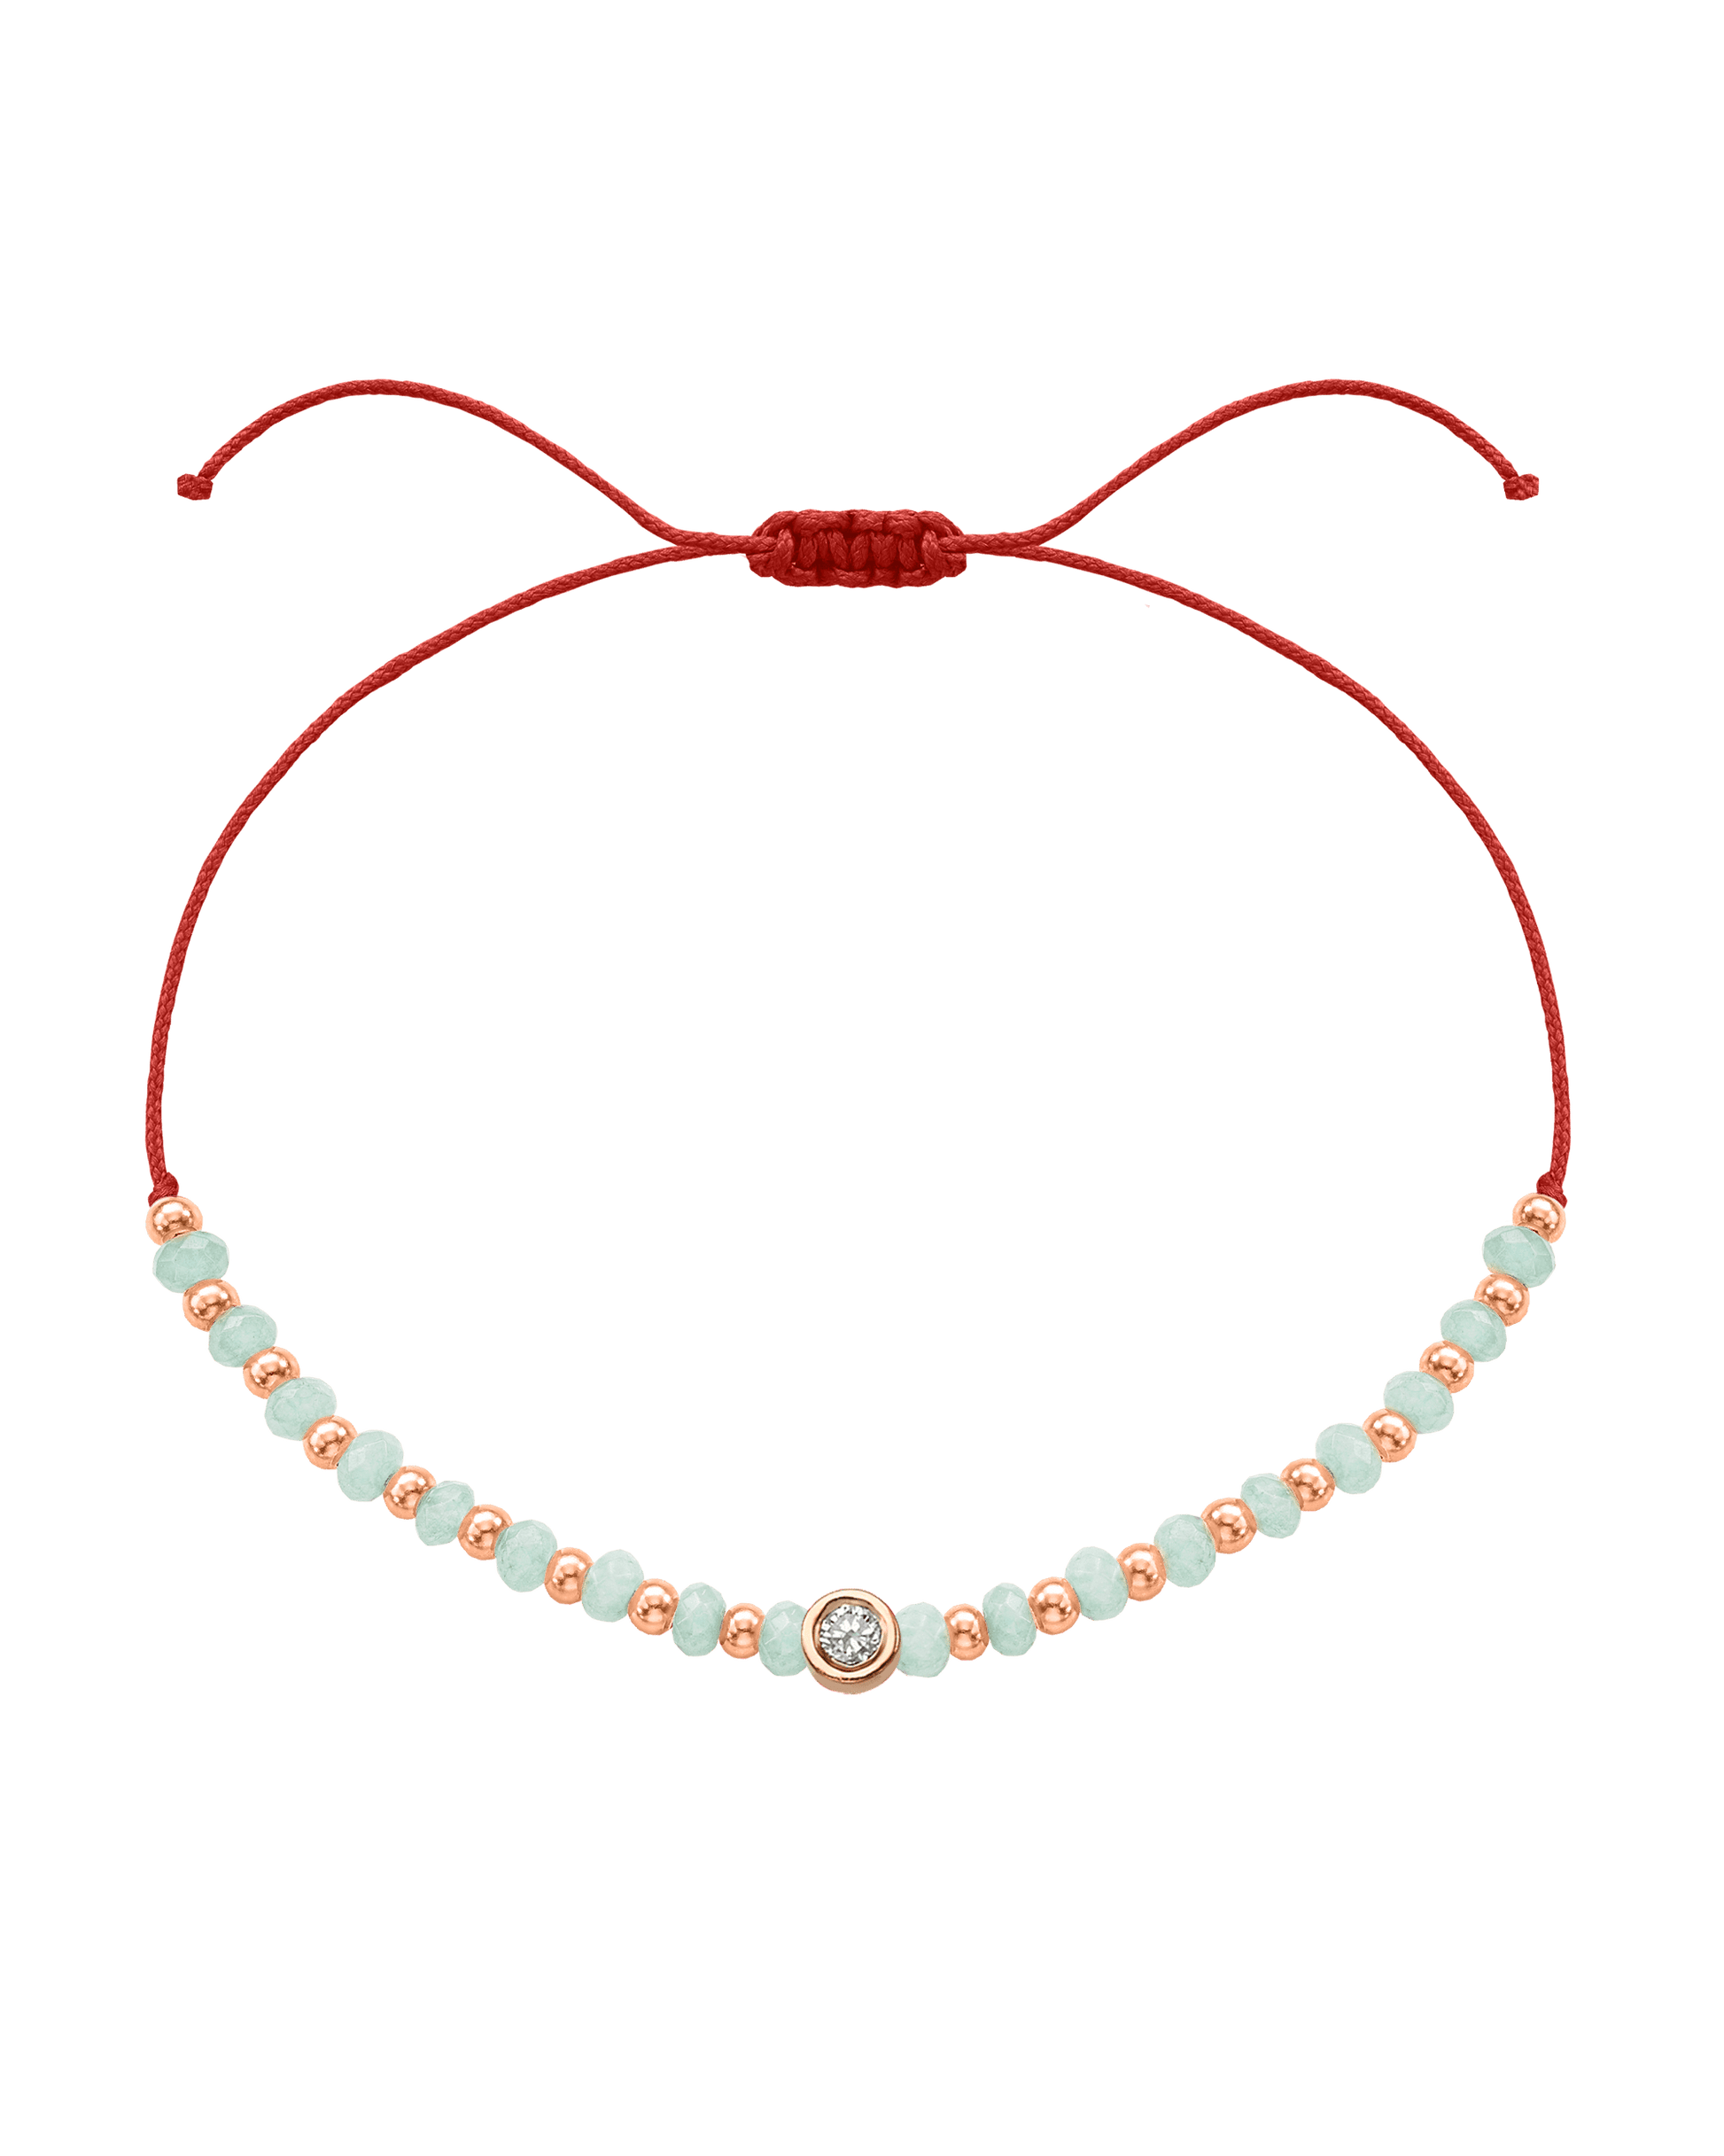 Apatite Gemstone String of Love Bracelet for Inspiration - 14K Rose Gold Bracelets 14K Solid Gold Red Medium: 0.04ct 